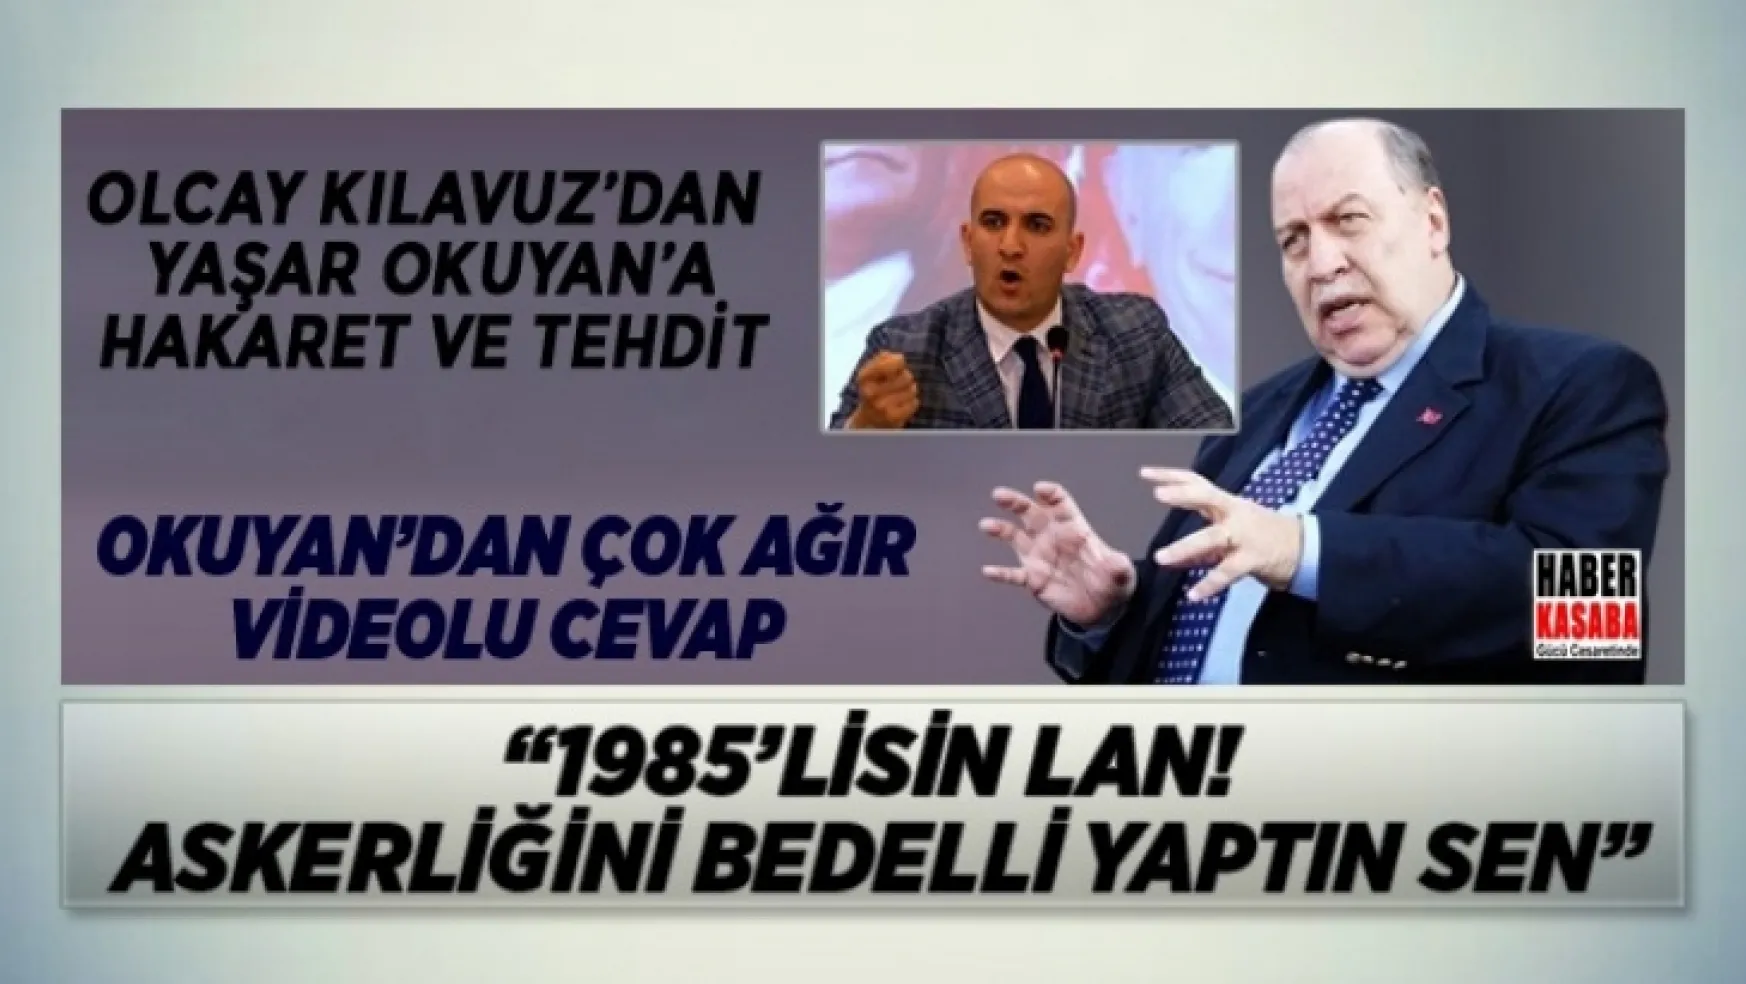 Yaşar Okuyan, Olcay KIlavuz'a çok ağır videolu cevap verdi